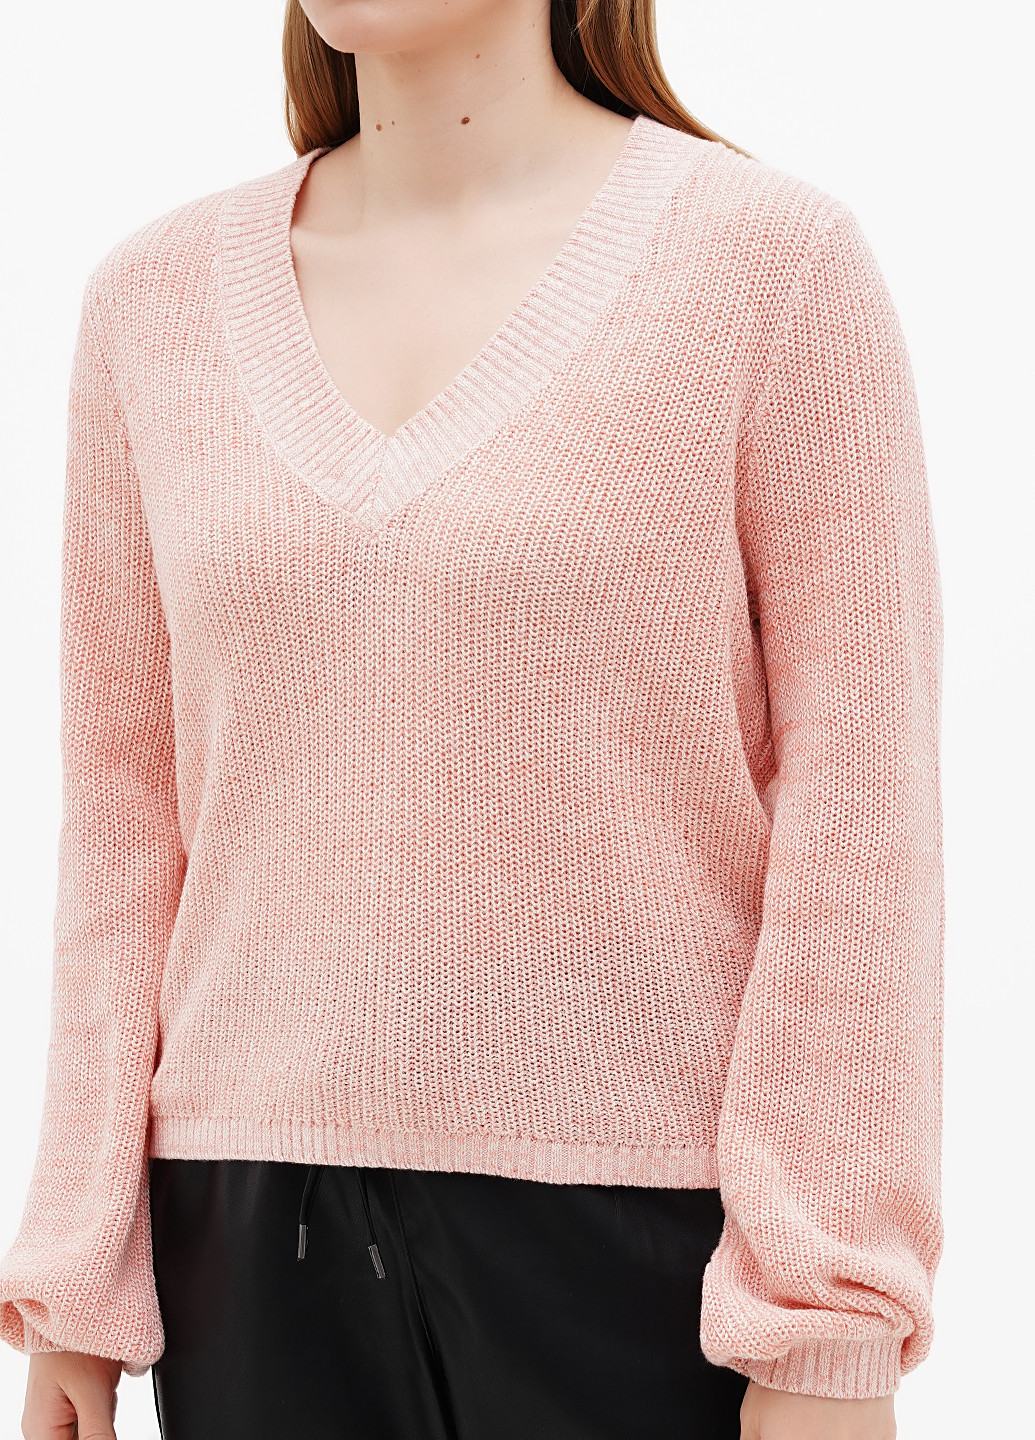 Персиковый демисезонный пуловер пуловер S.Oliver